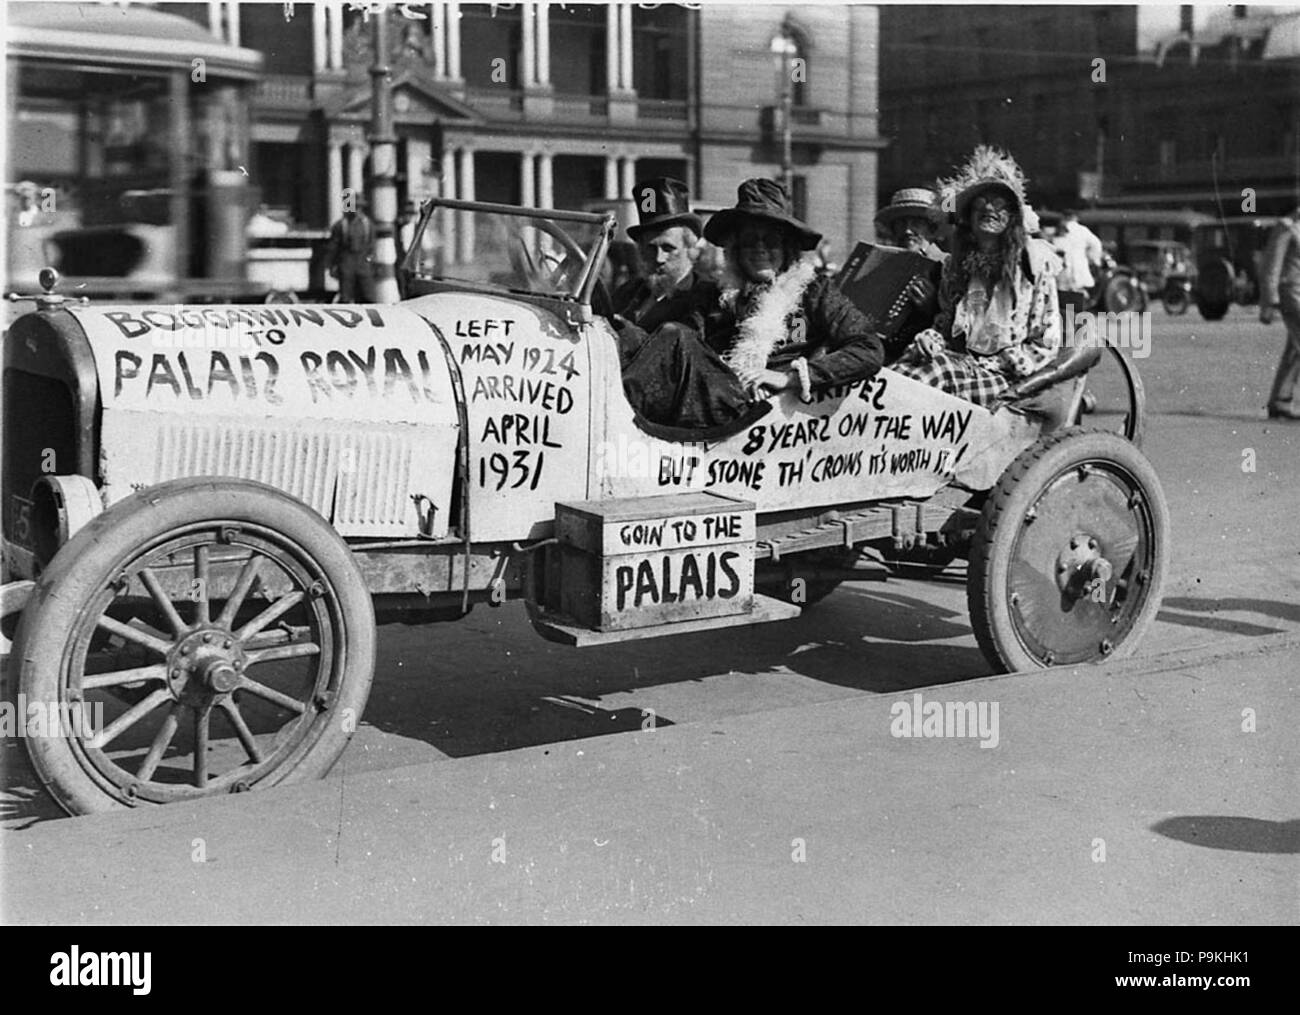 51635 SLNSW 273 quatre personnes dans une voiture de la publicité pour un père et Dave nuit au Palais Royal Ballroom 1924 Boggawindi gauche arrivé Palais 1931 Banque D'Images